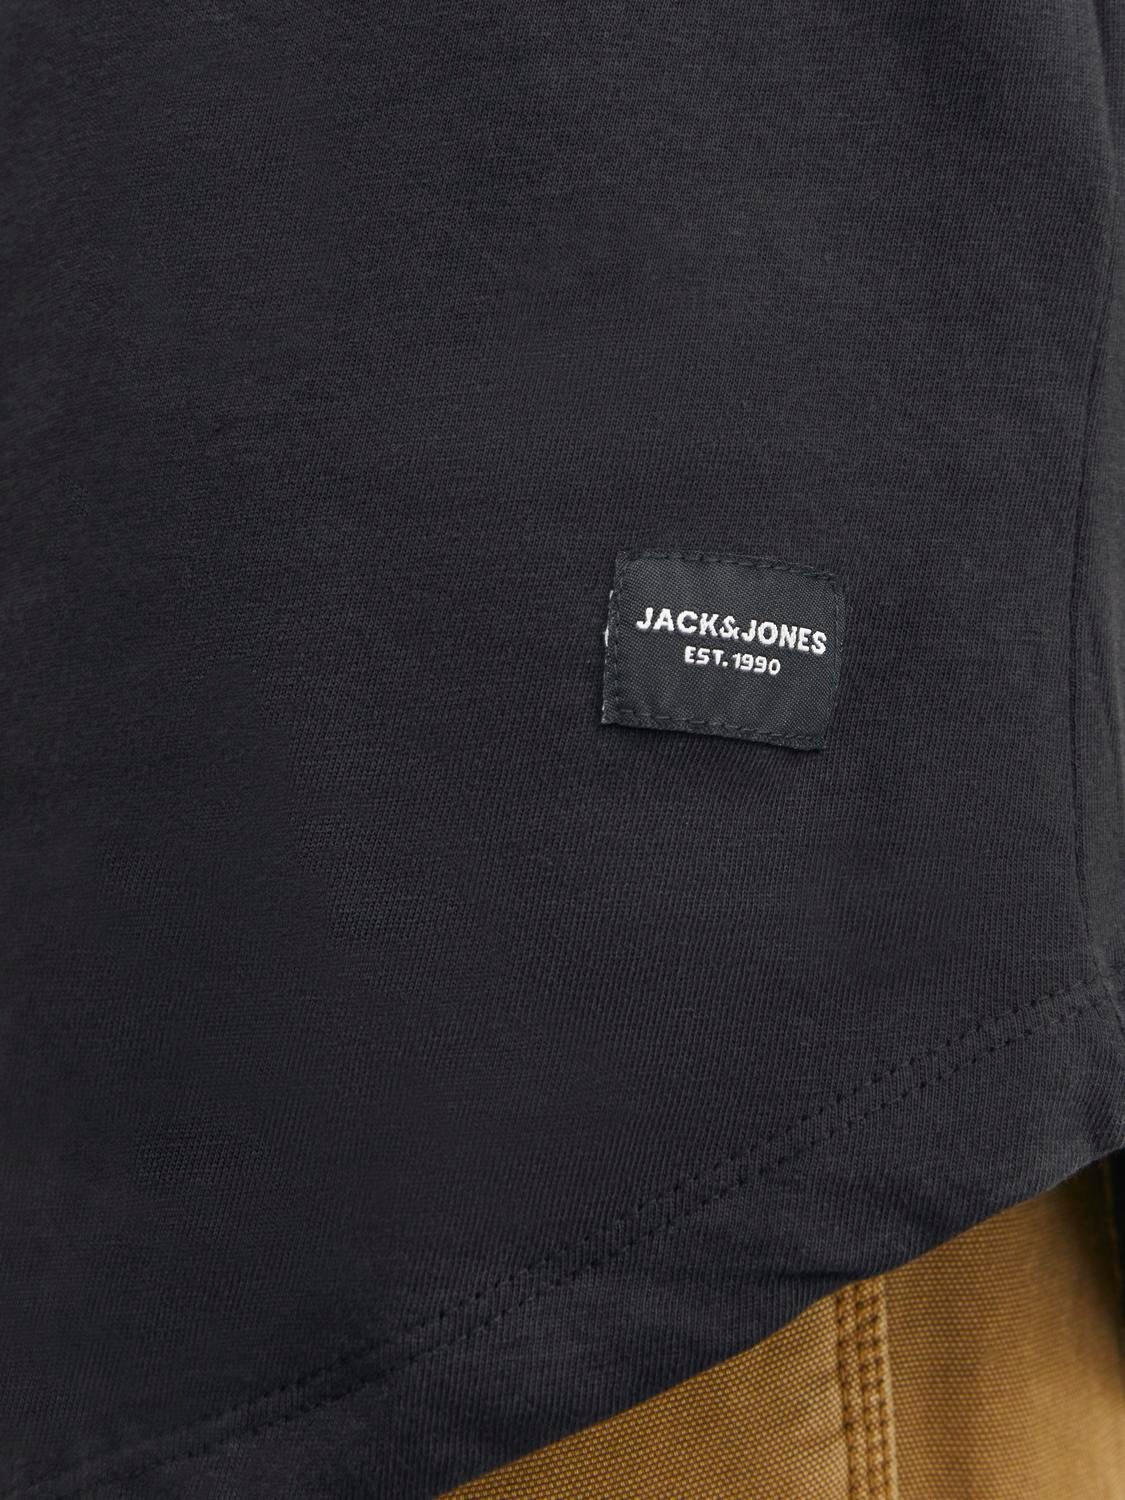 Jack & Jones Einfarbig Rundhals T-shirt -Black - 12210945